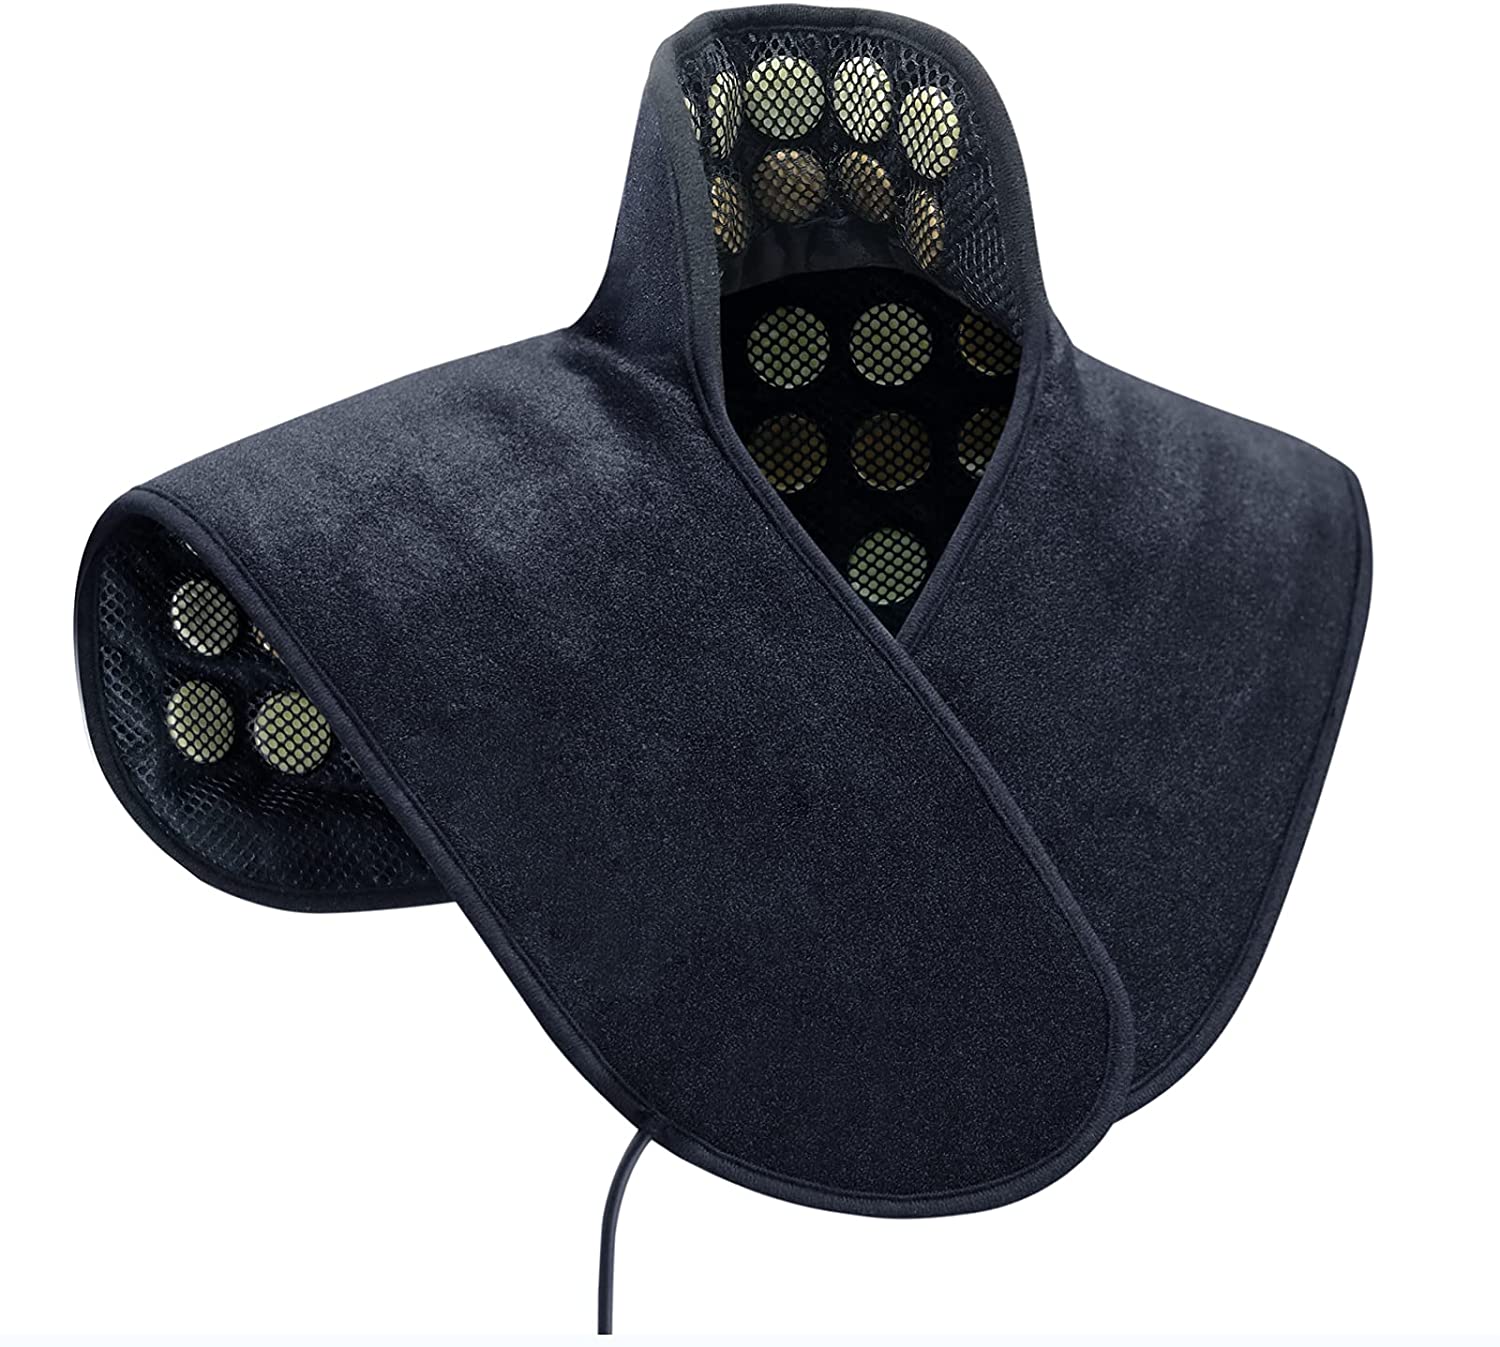 Comment acheter le meilleur coussin chauffant infrarouge pour le cou pour femmes 1